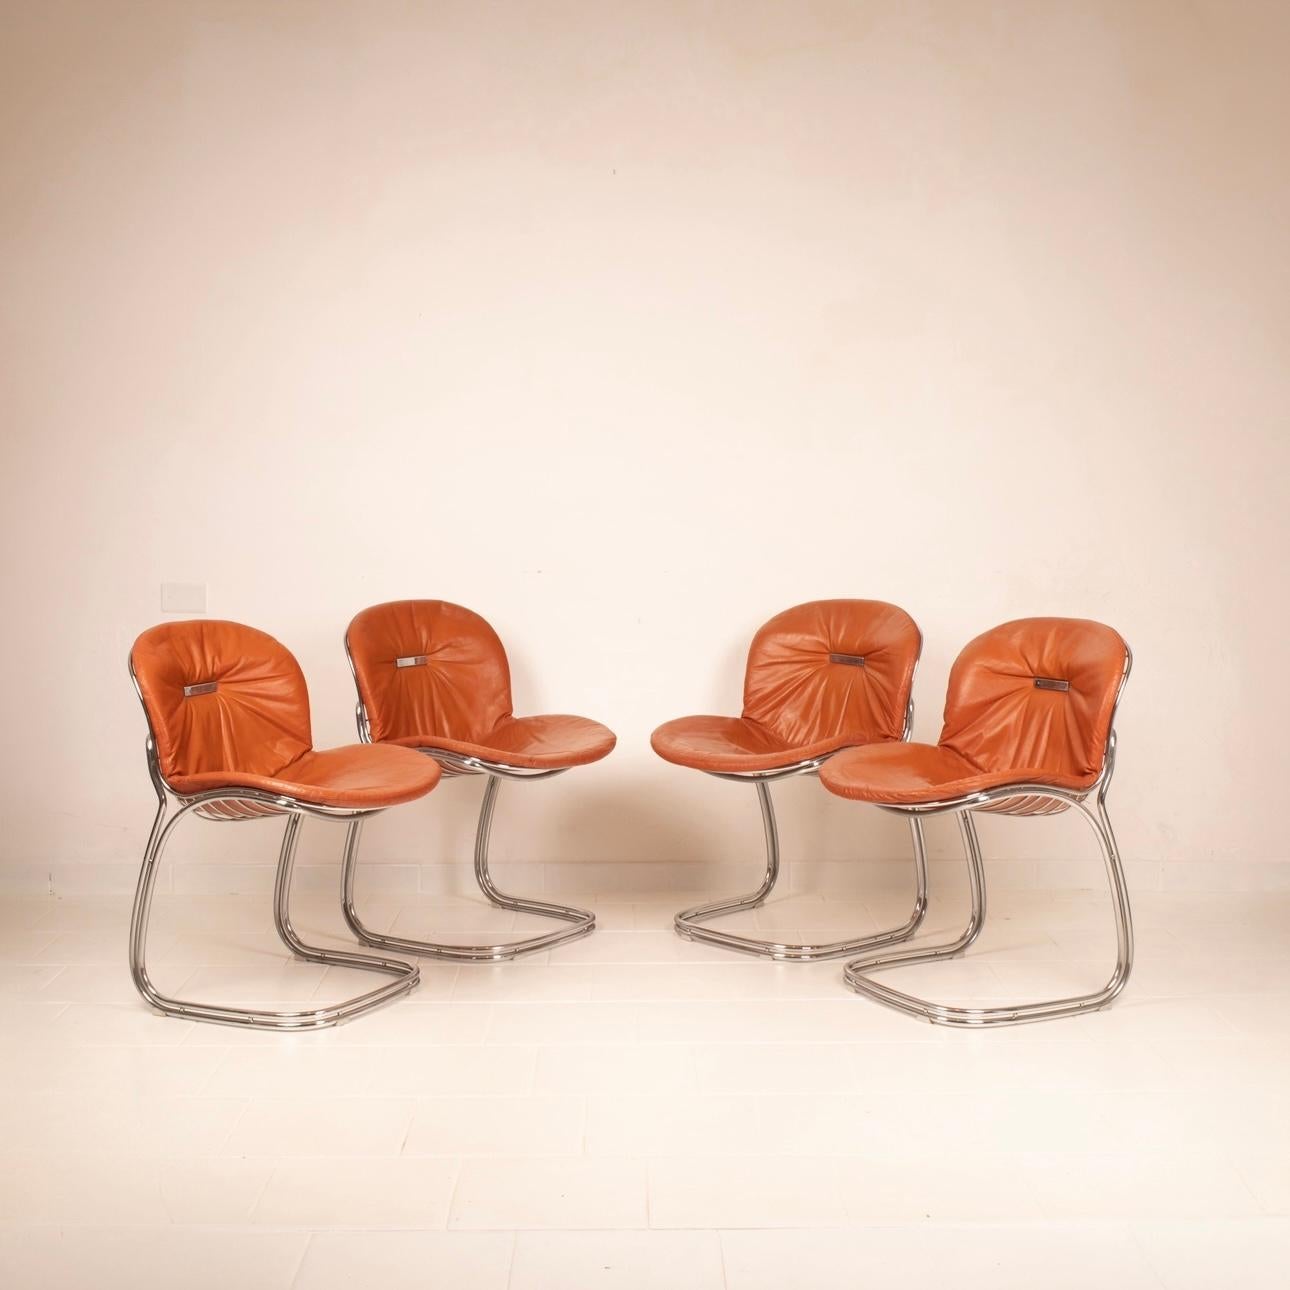 Bellissimo e iconico set di 4 sedie Sabrina disegnate da Gastone e Giorgio Rinaldi per l'azienda Rima di Desio negli anni 70.
Il set si presenta in ottime condizioni vintage completo dei cuscini originali in pelle color tabacco, con qualche